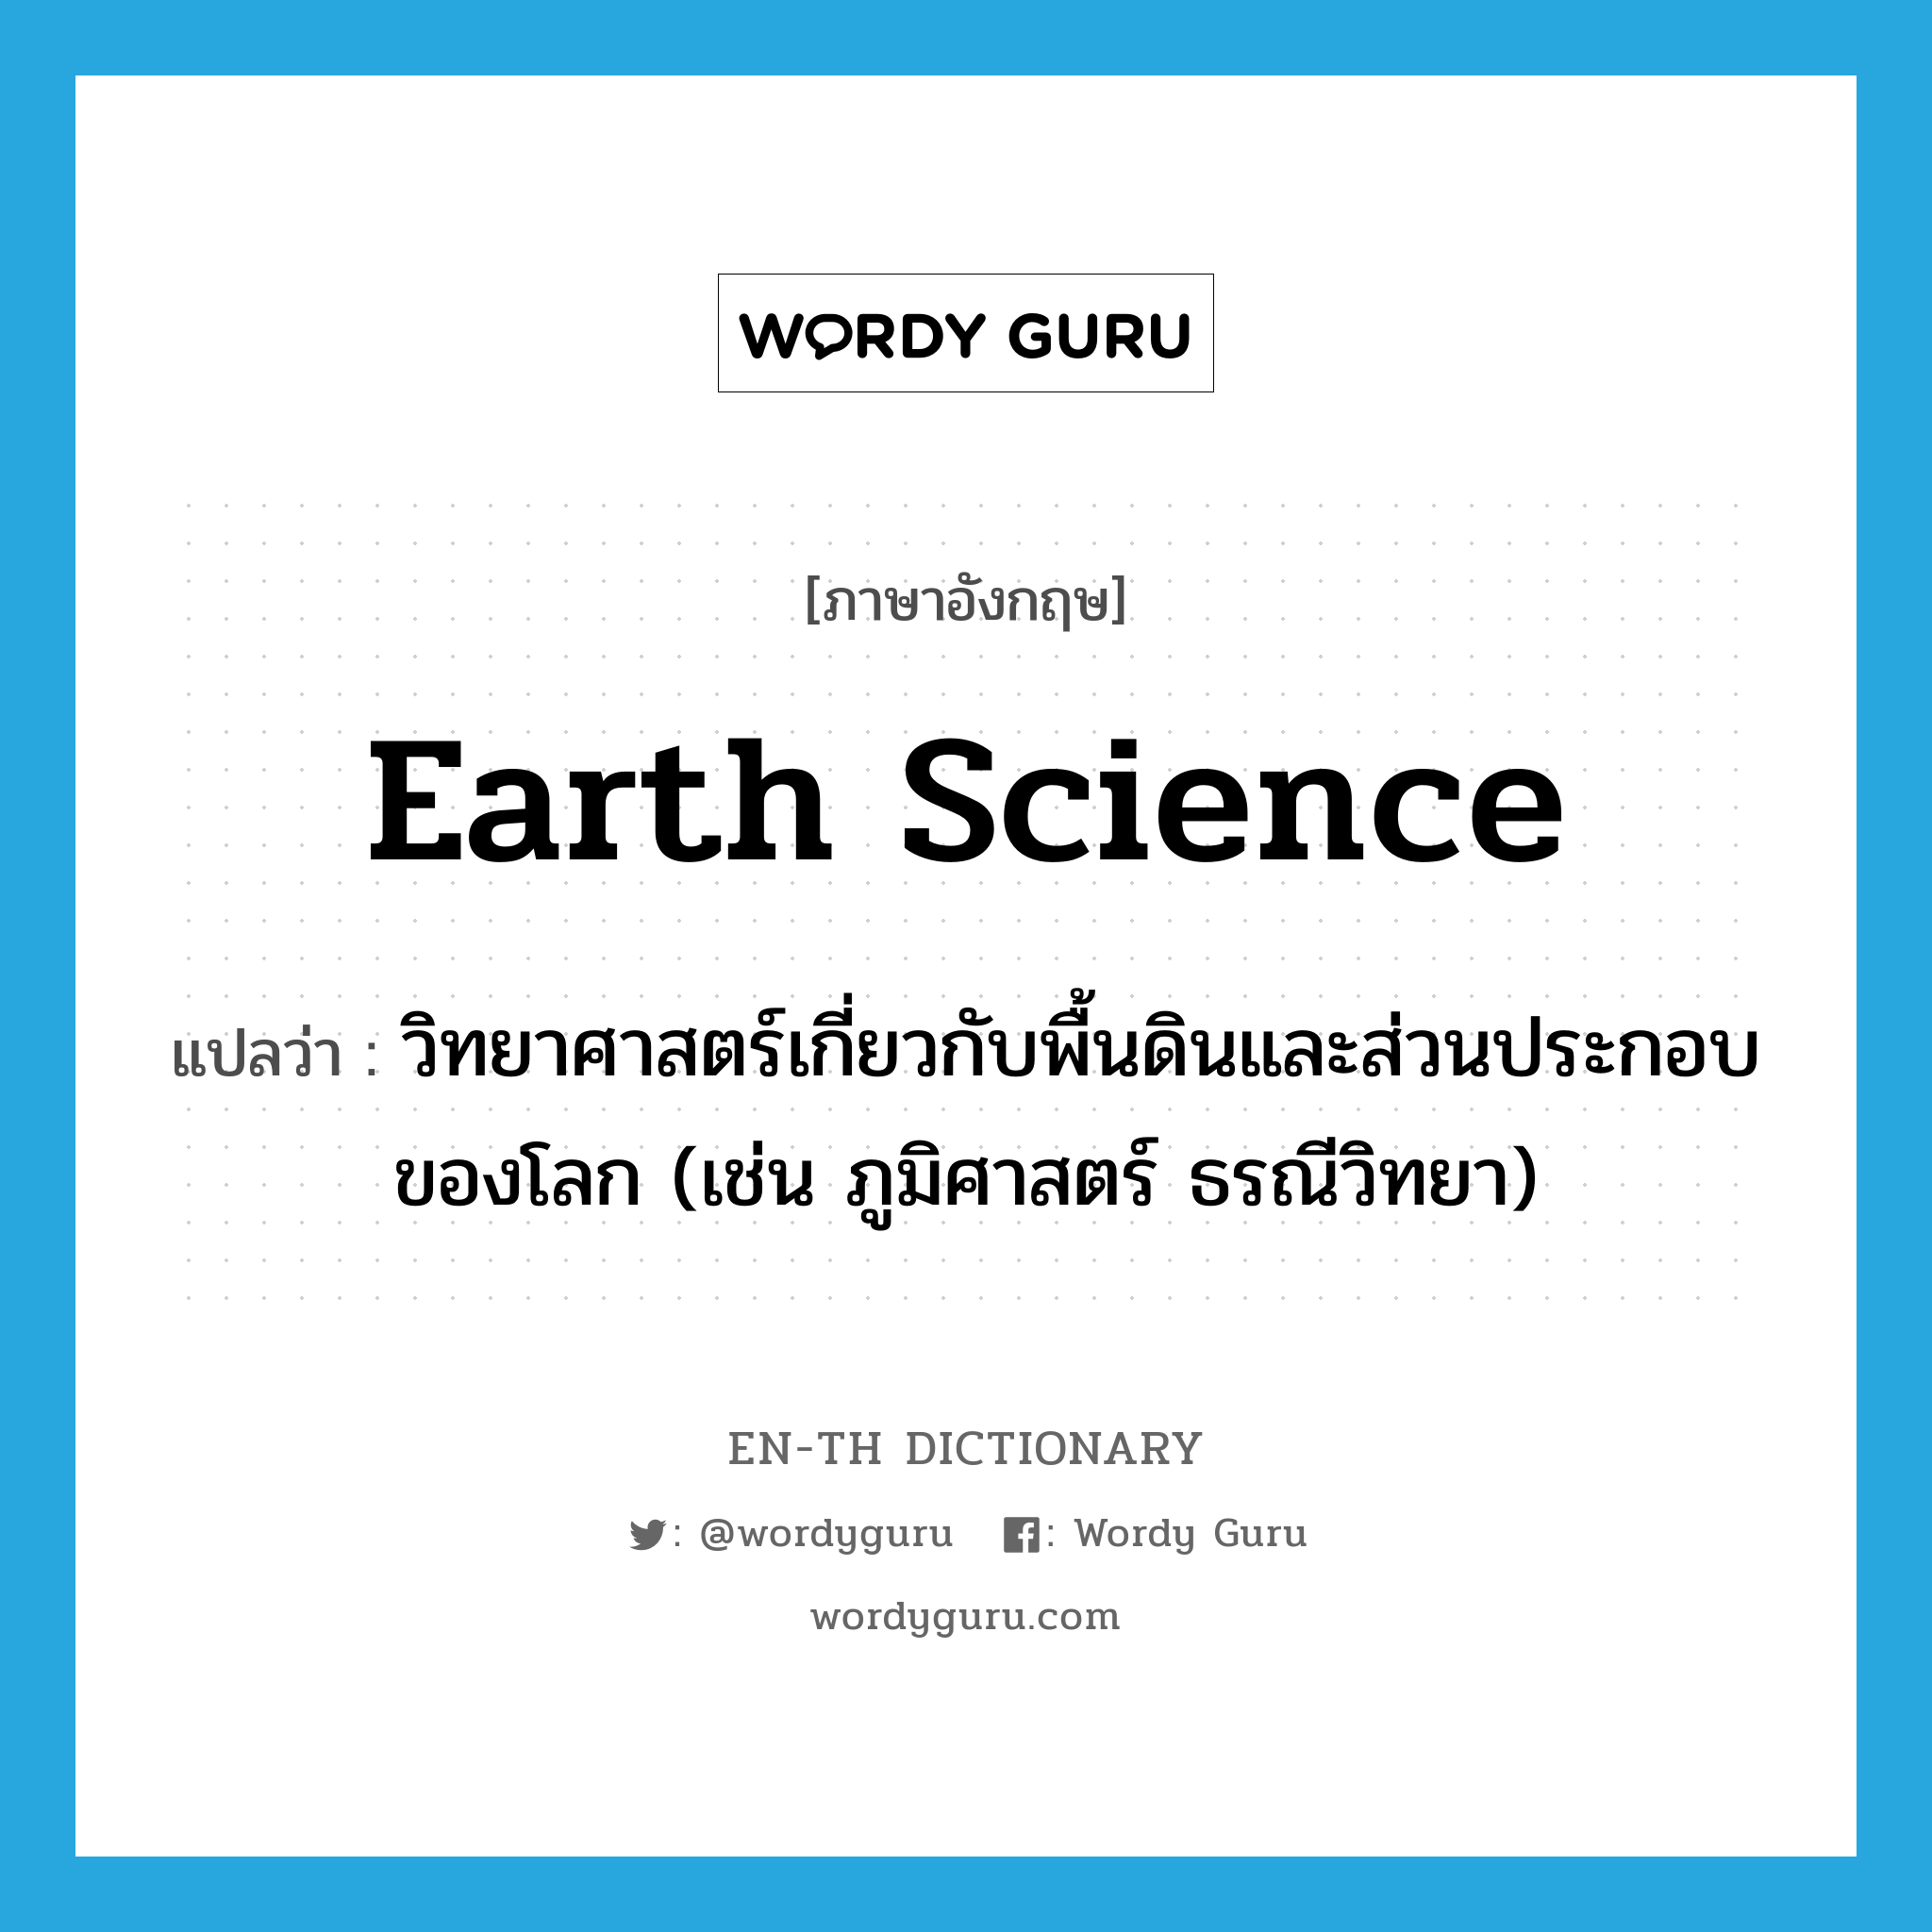 earth science แปลว่า?, คำศัพท์ภาษาอังกฤษ earth science แปลว่า วิทยาศาสตร์เกี่ยวกับพื้นดินและส่วนประกอบของโลก (เช่น ภูมิศาสตร์ ธรณีวิทยา) ประเภท N หมวด N